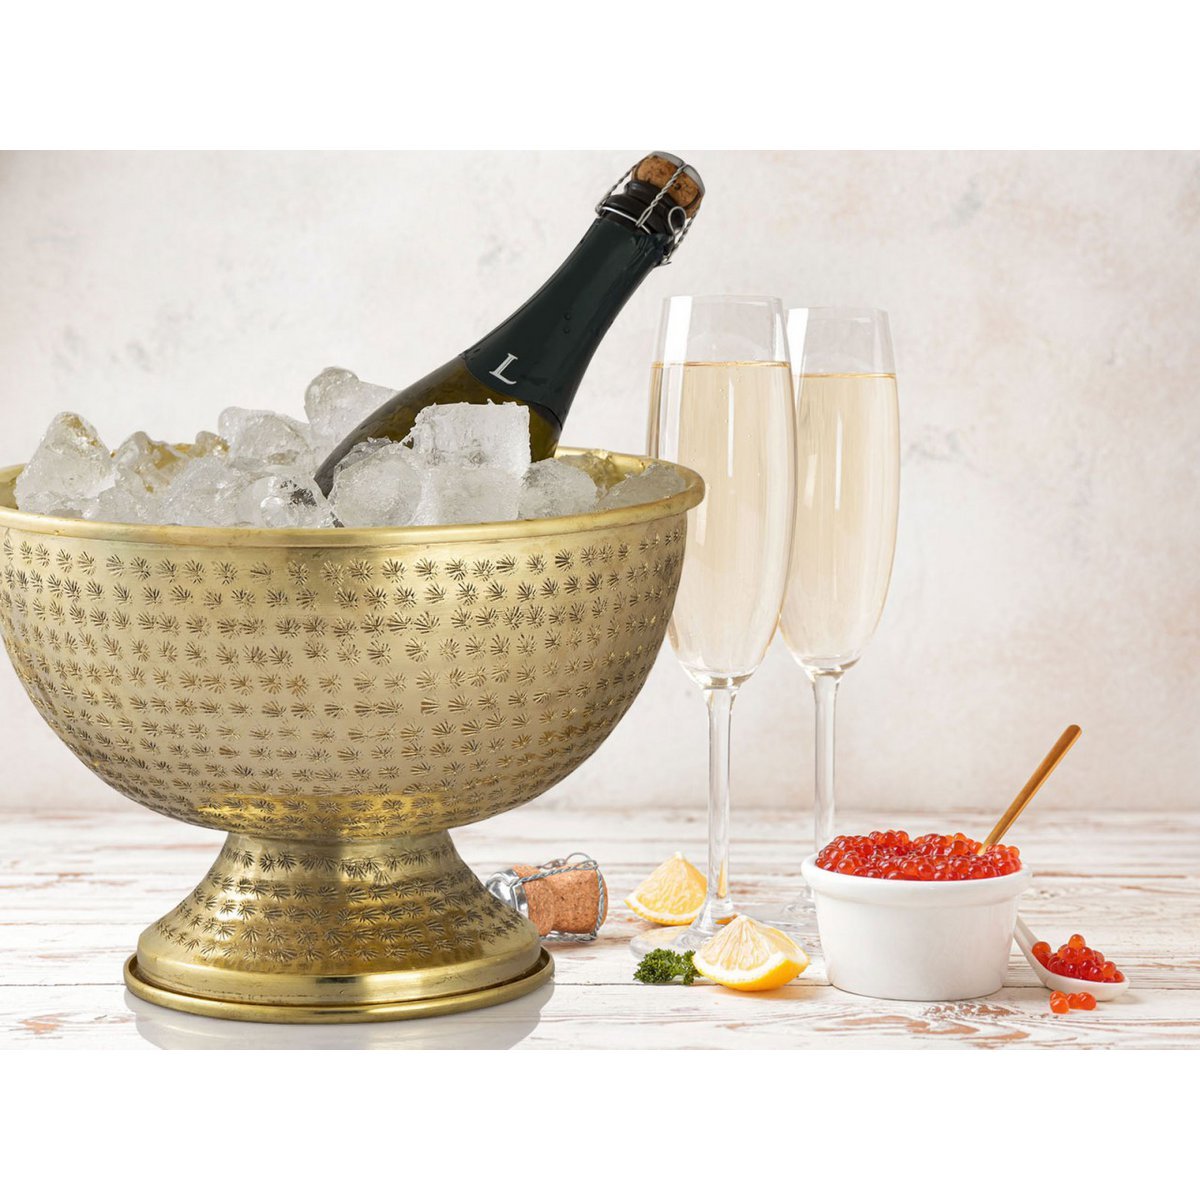 Weinkühler 4-teilig Flaschenkühler Metall ø 29 cm Sektkühler rund silber gold Eiskühler Champagner variant: gold